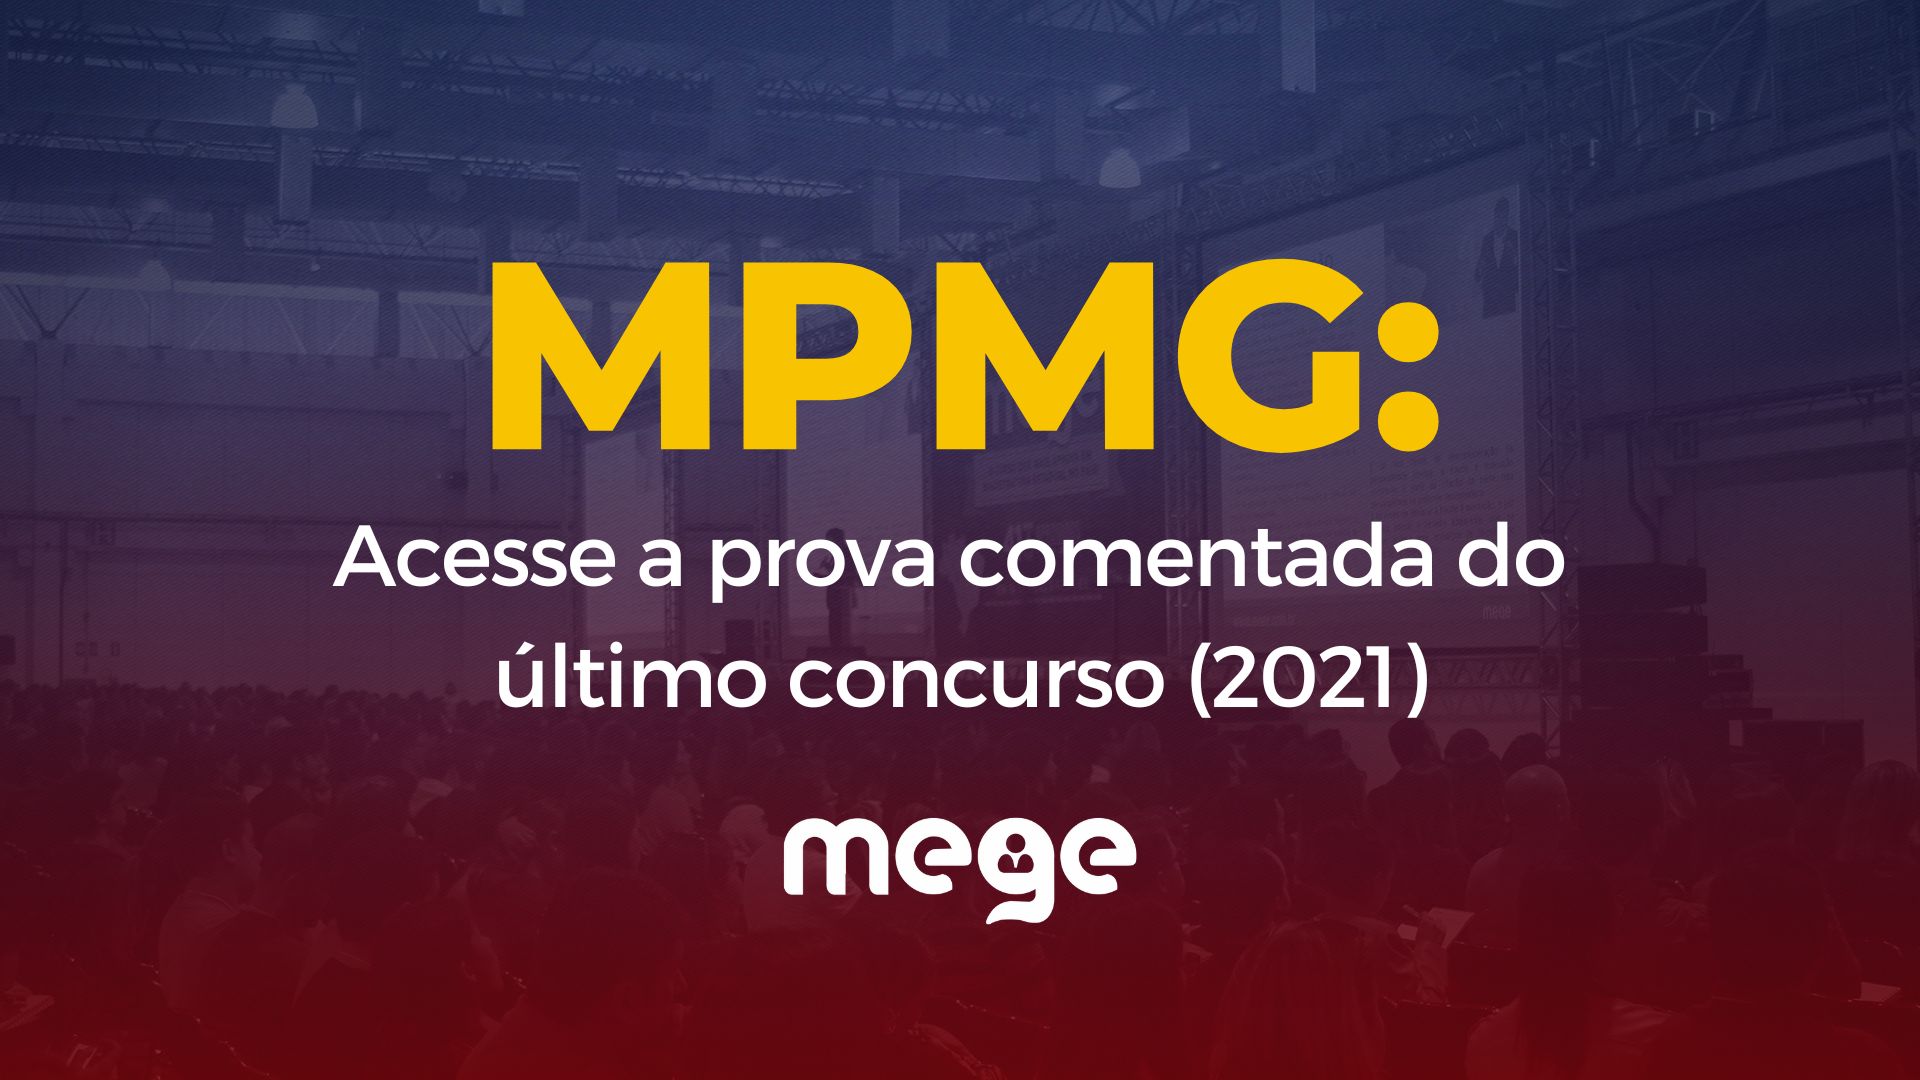 MPMG: Acesse a prova comentada do último concurso (2021)